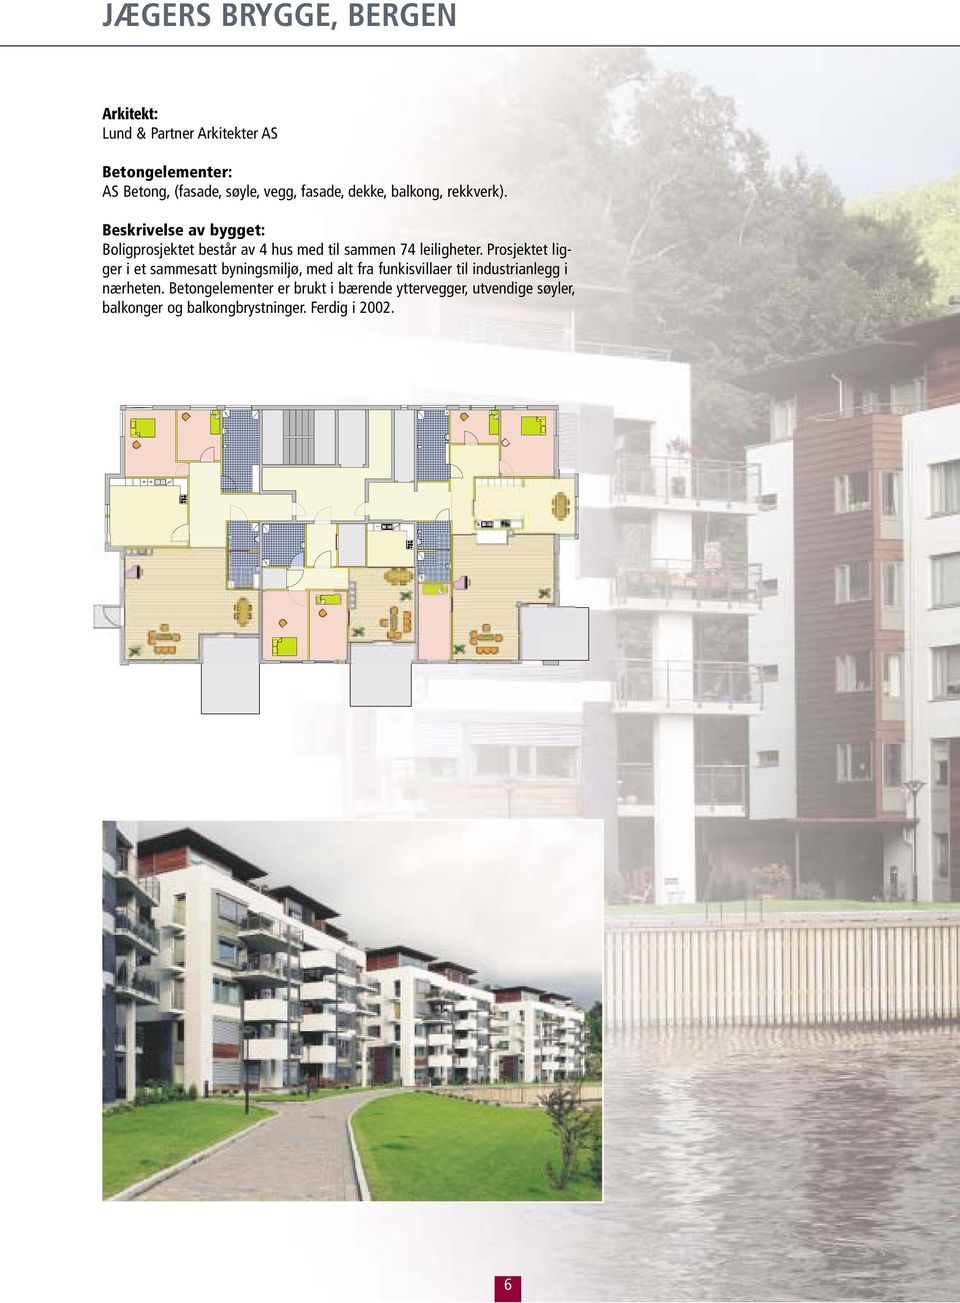 Beskrivelse av bygget: Boligprosjektet består av 4 hus med til sammen 74 leiligheter.